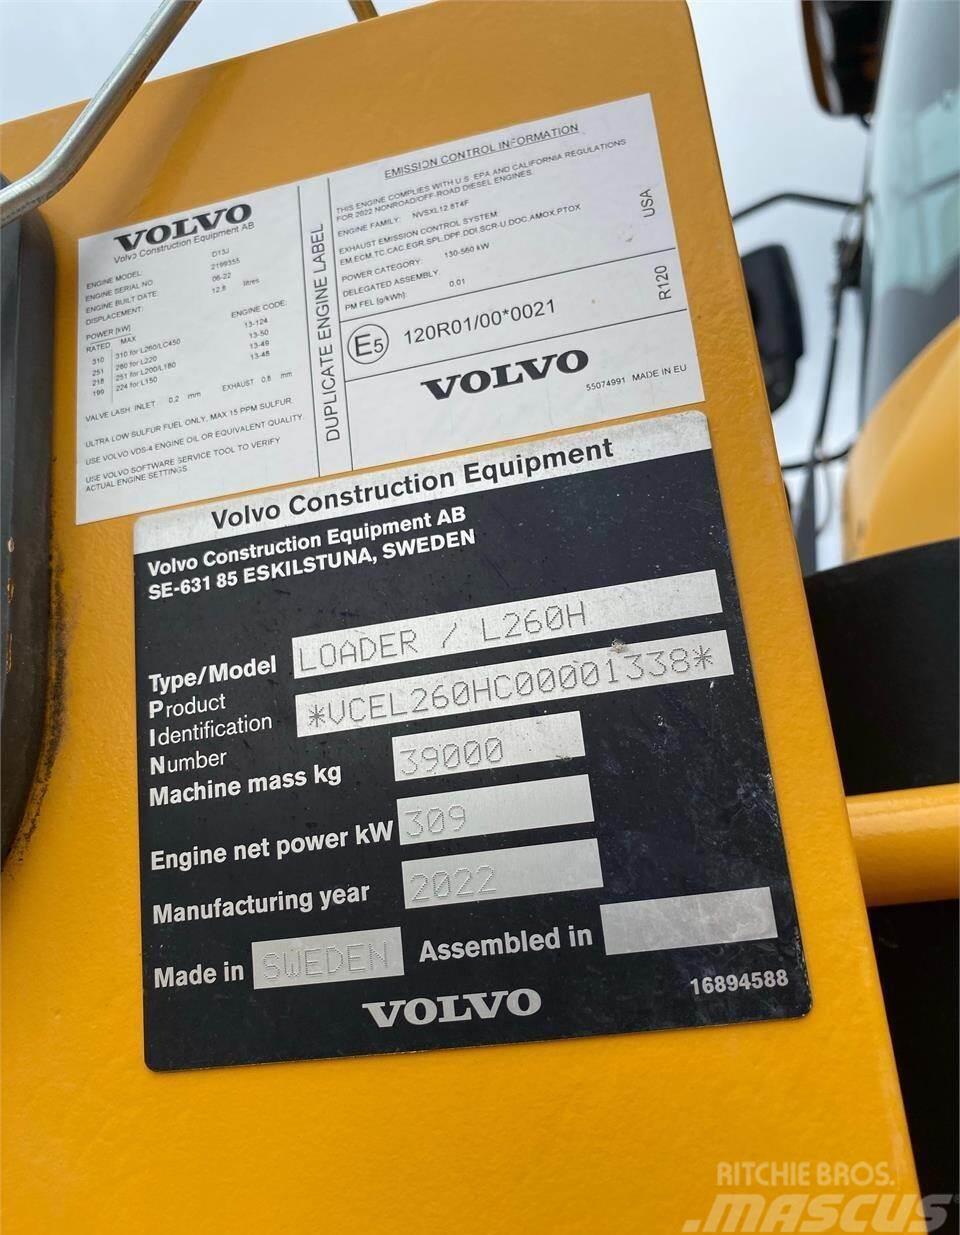 Volvo L260H Pás carregadoras de rodas